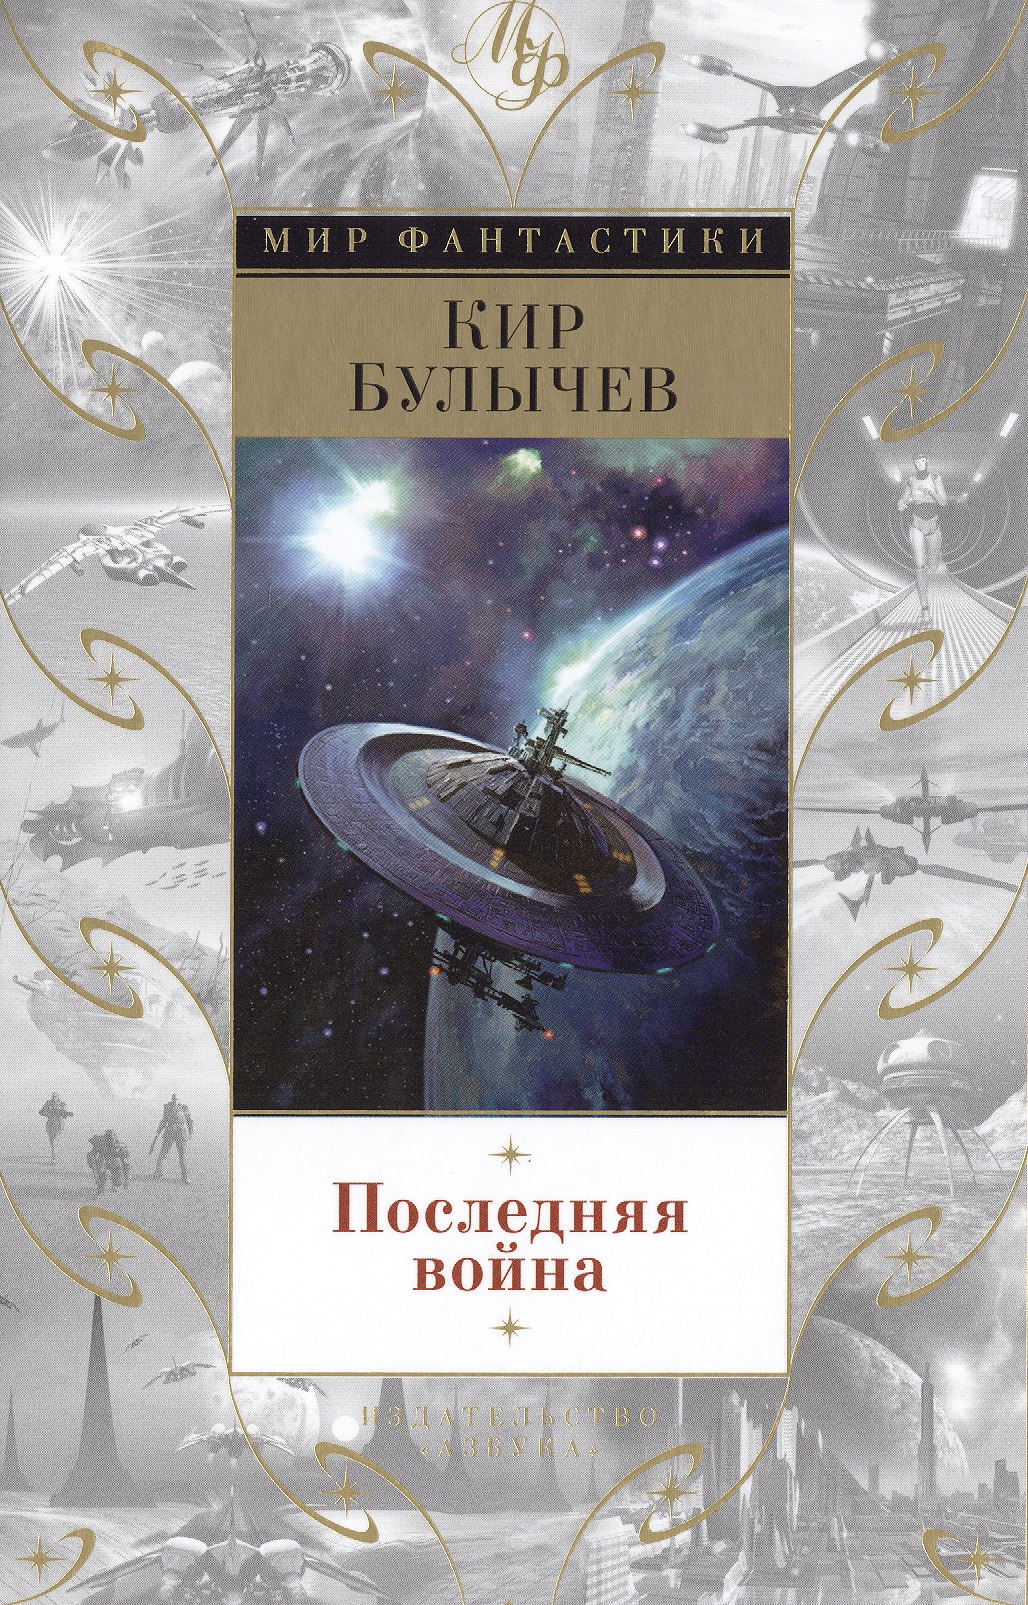 кир булычев цикл река хронос комплект из 2 книг Булычев Кир Последняя война